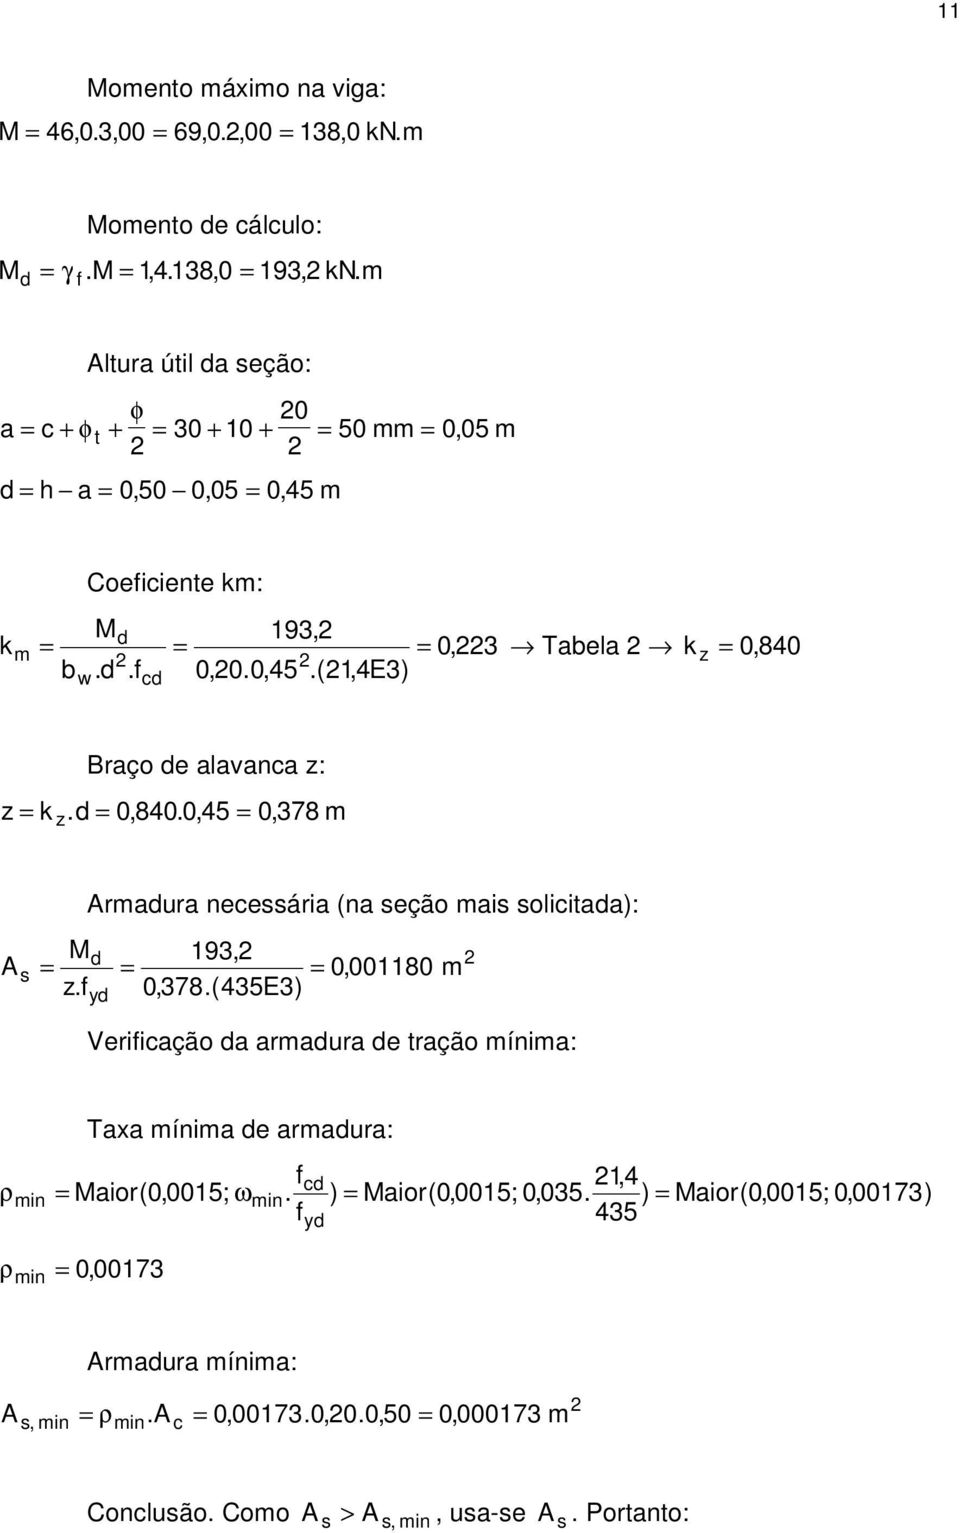 (1,4E3) m = w Braço e alavana z: z = k. = 0, 840. 0, 45 = 0, 378 m z Armaura neeária (na eção mai oliitaa): 193, A = = = 0,001180 m z.f 0,378.